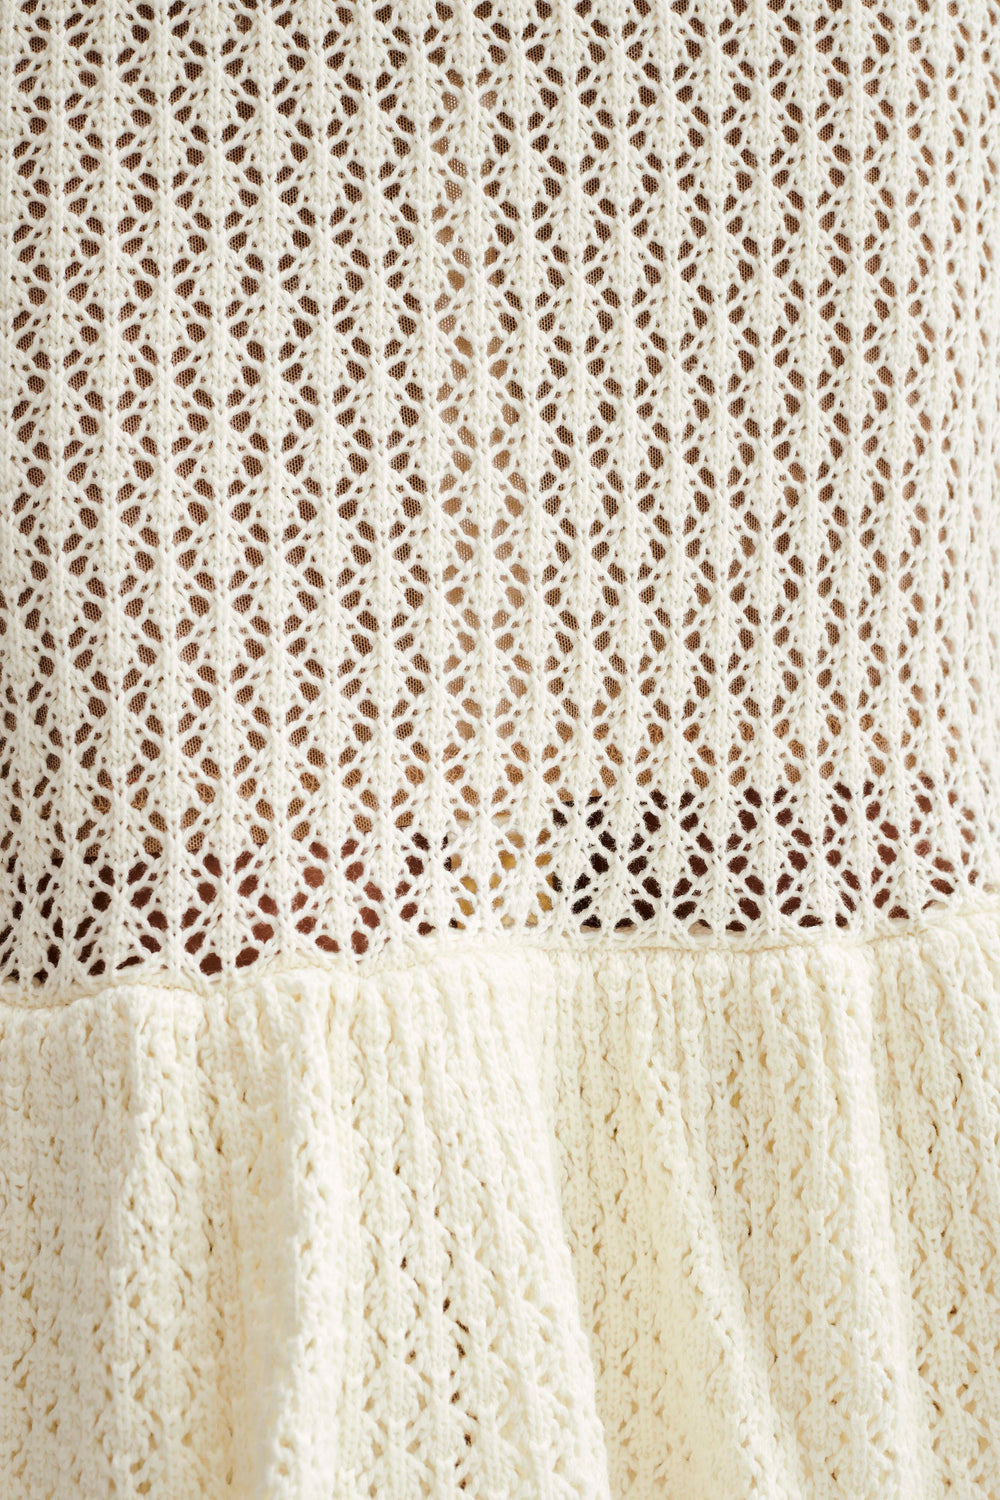 Bianca Knit Midi Dress - Ivory